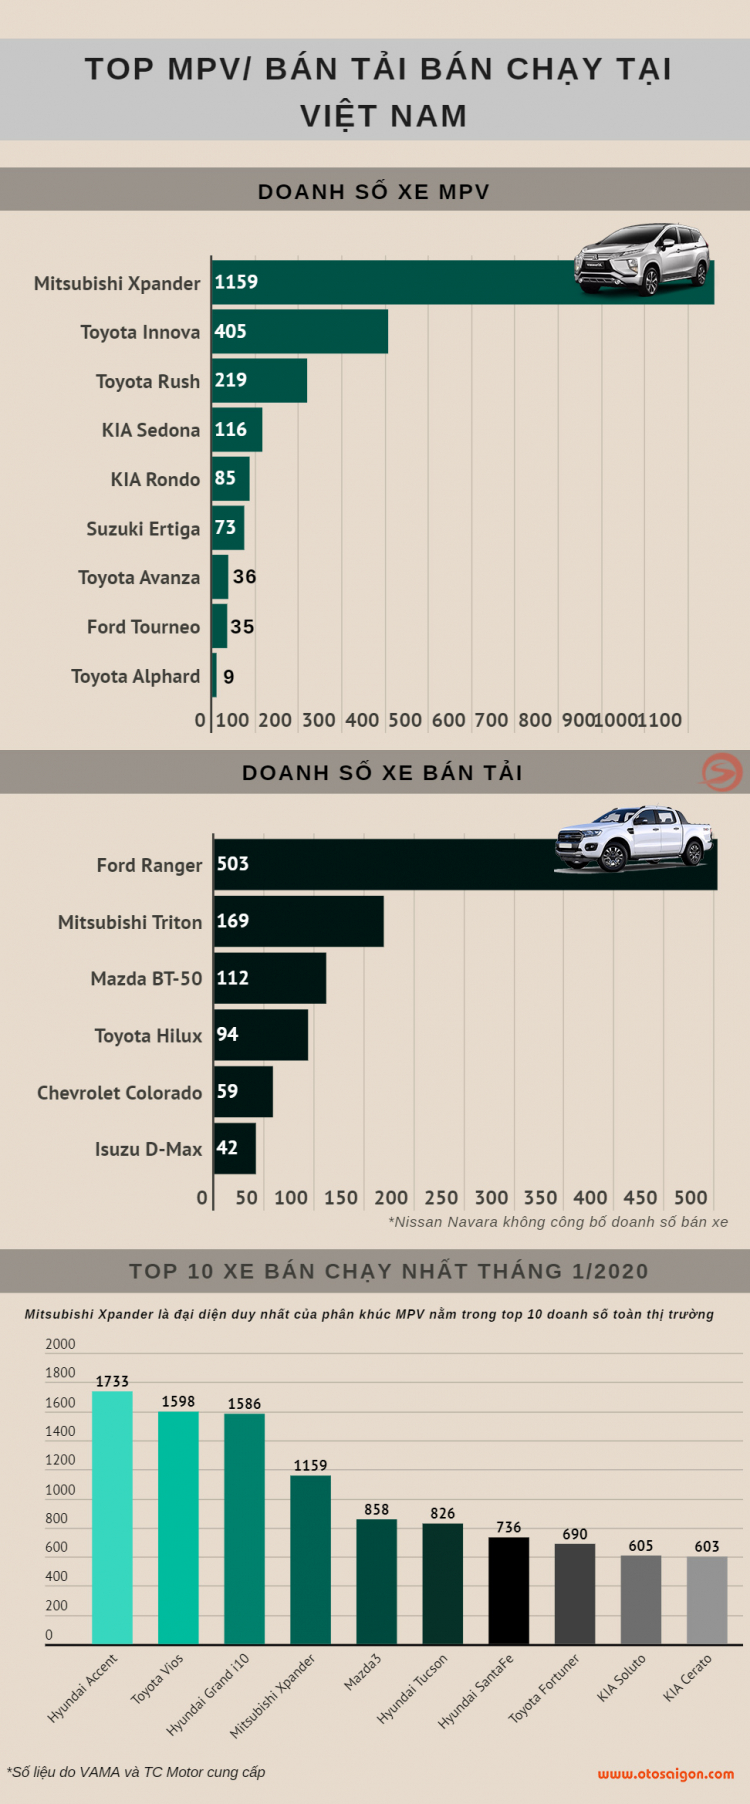 [Infographic] Top MPV/Bán tải bán chạy tại Việt Nam tháng 1/2020